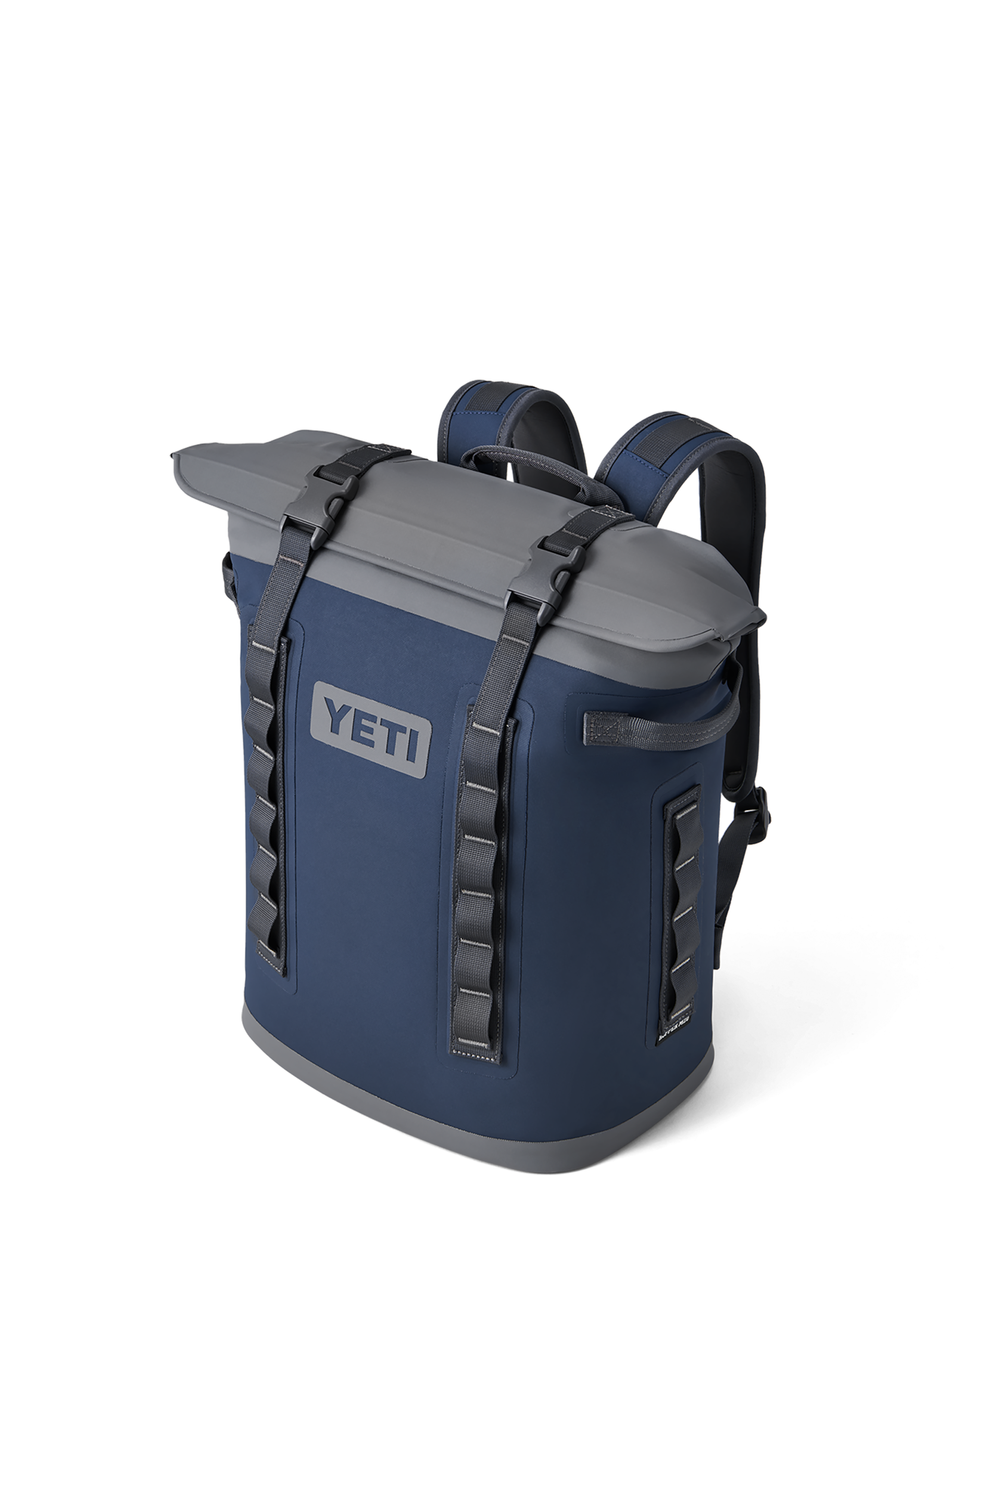 Yeti Hopper Backpack M20 Soft Cooler Navy